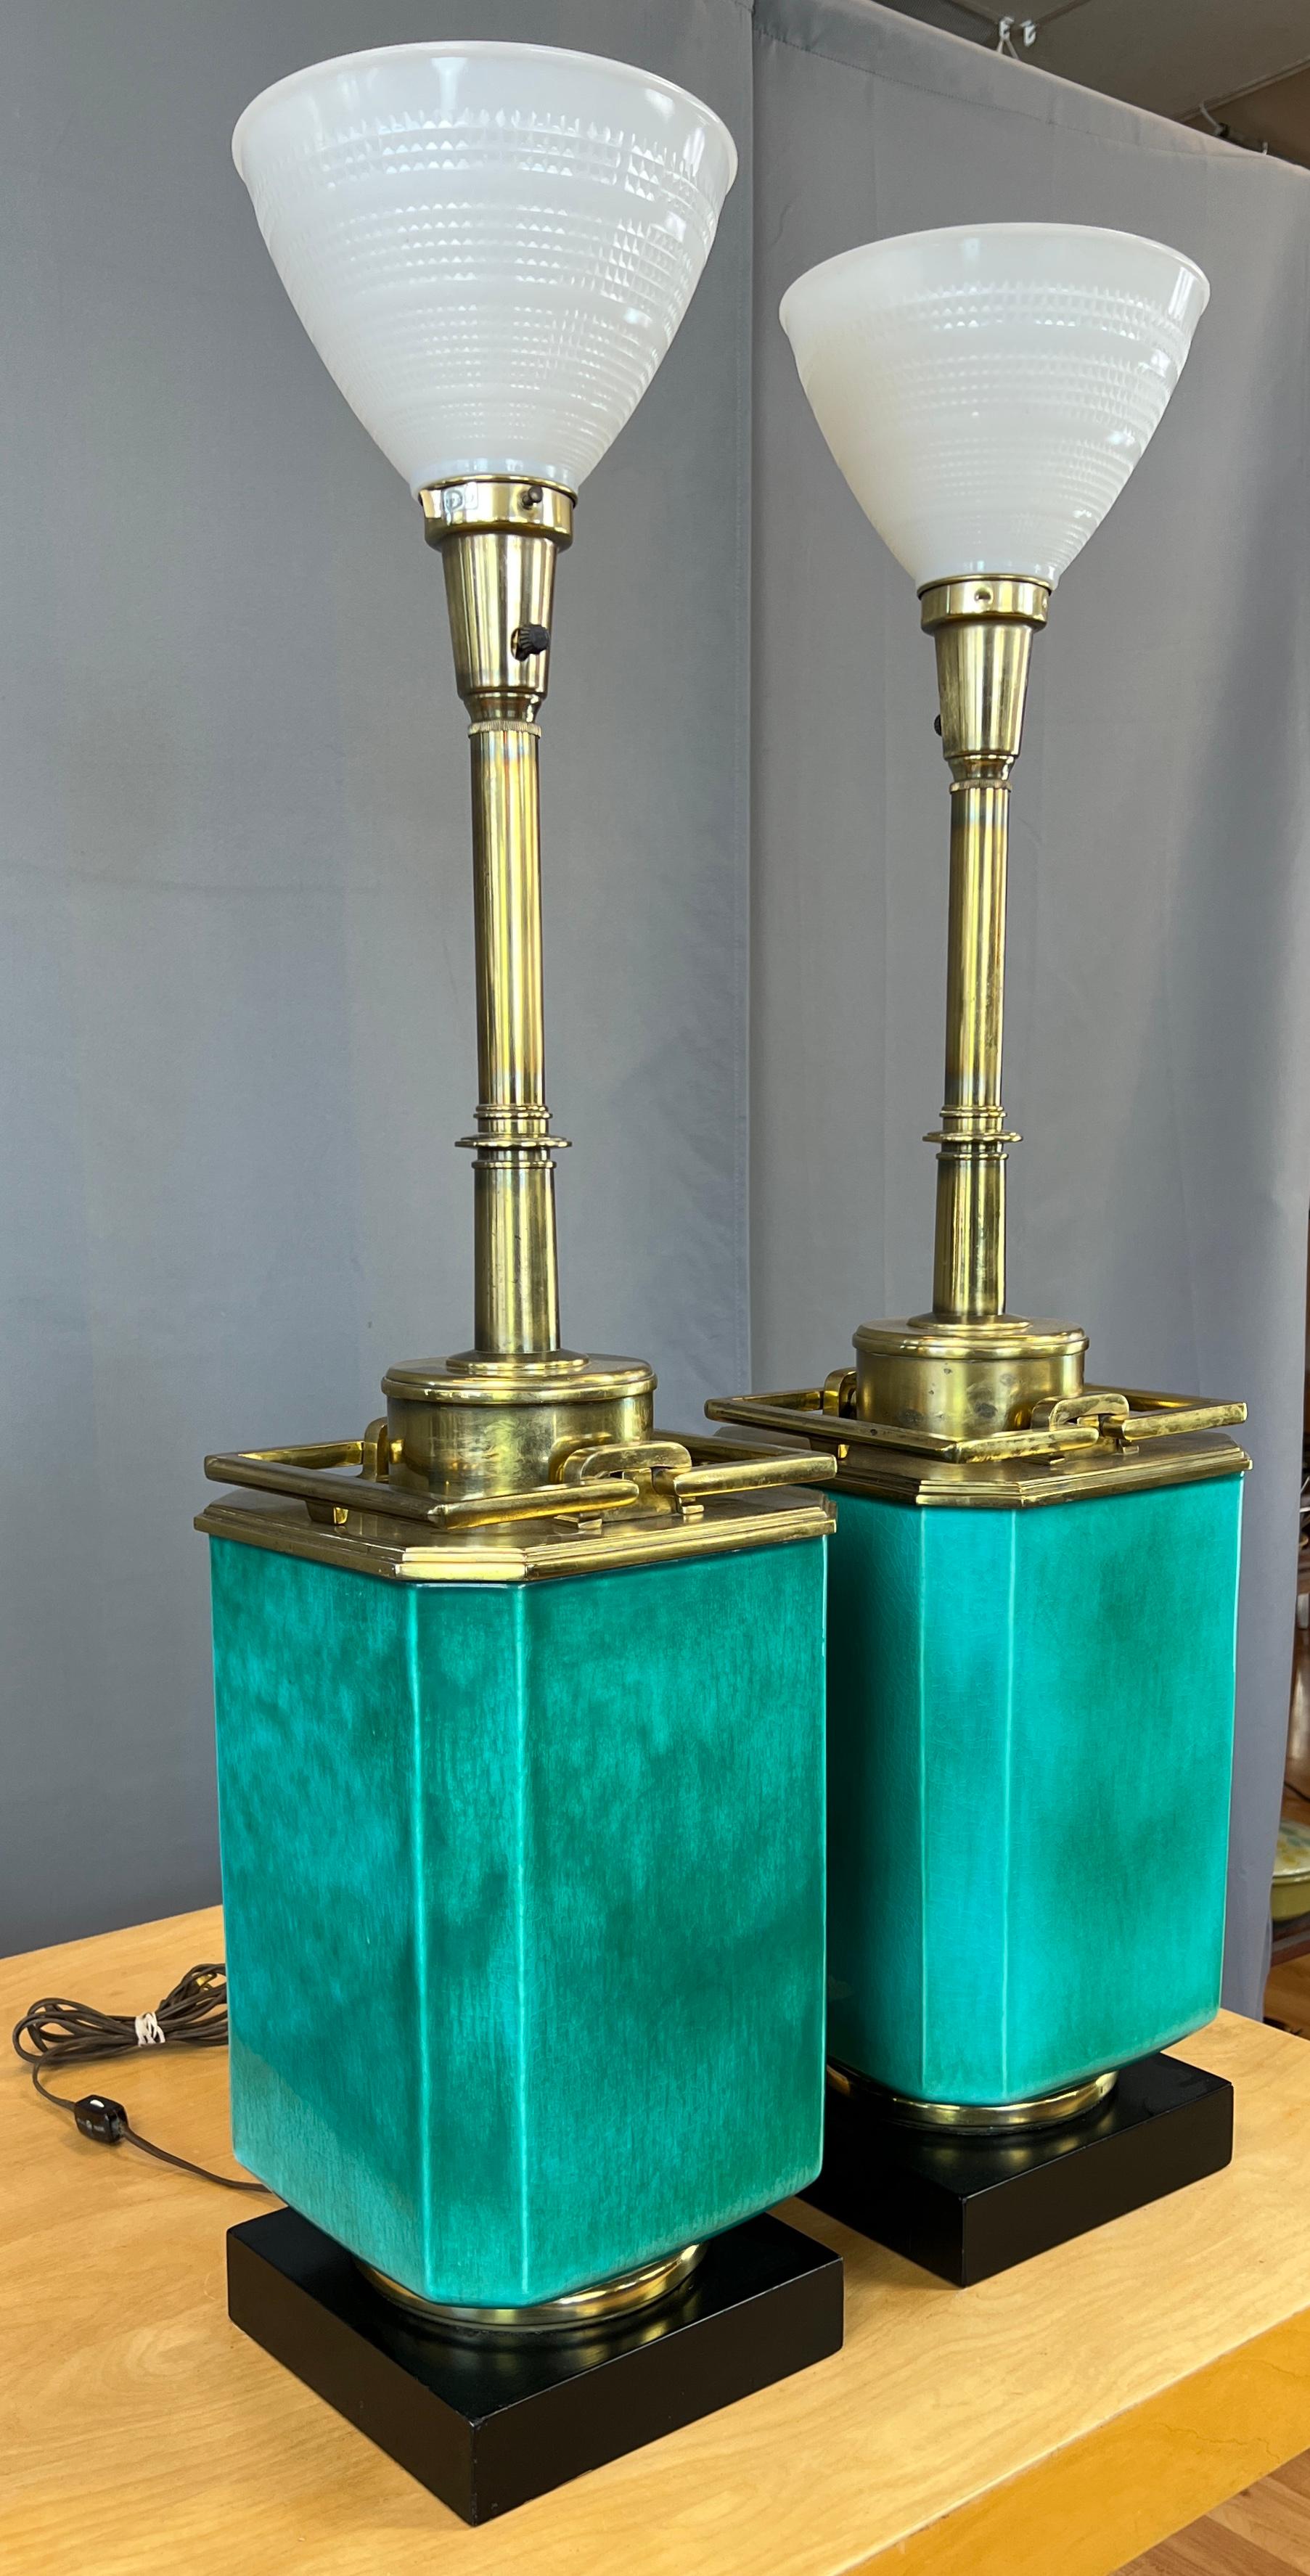 Une paire monumentale de lampes de table en turquoise et laiton par Edwin Cole pour Stiffel.
Il commence par un piédestal carré en bois noir surmonté d'un anneau en laiton, sur lequel se trouve le grand corps principal en céramique turquoise.
Au